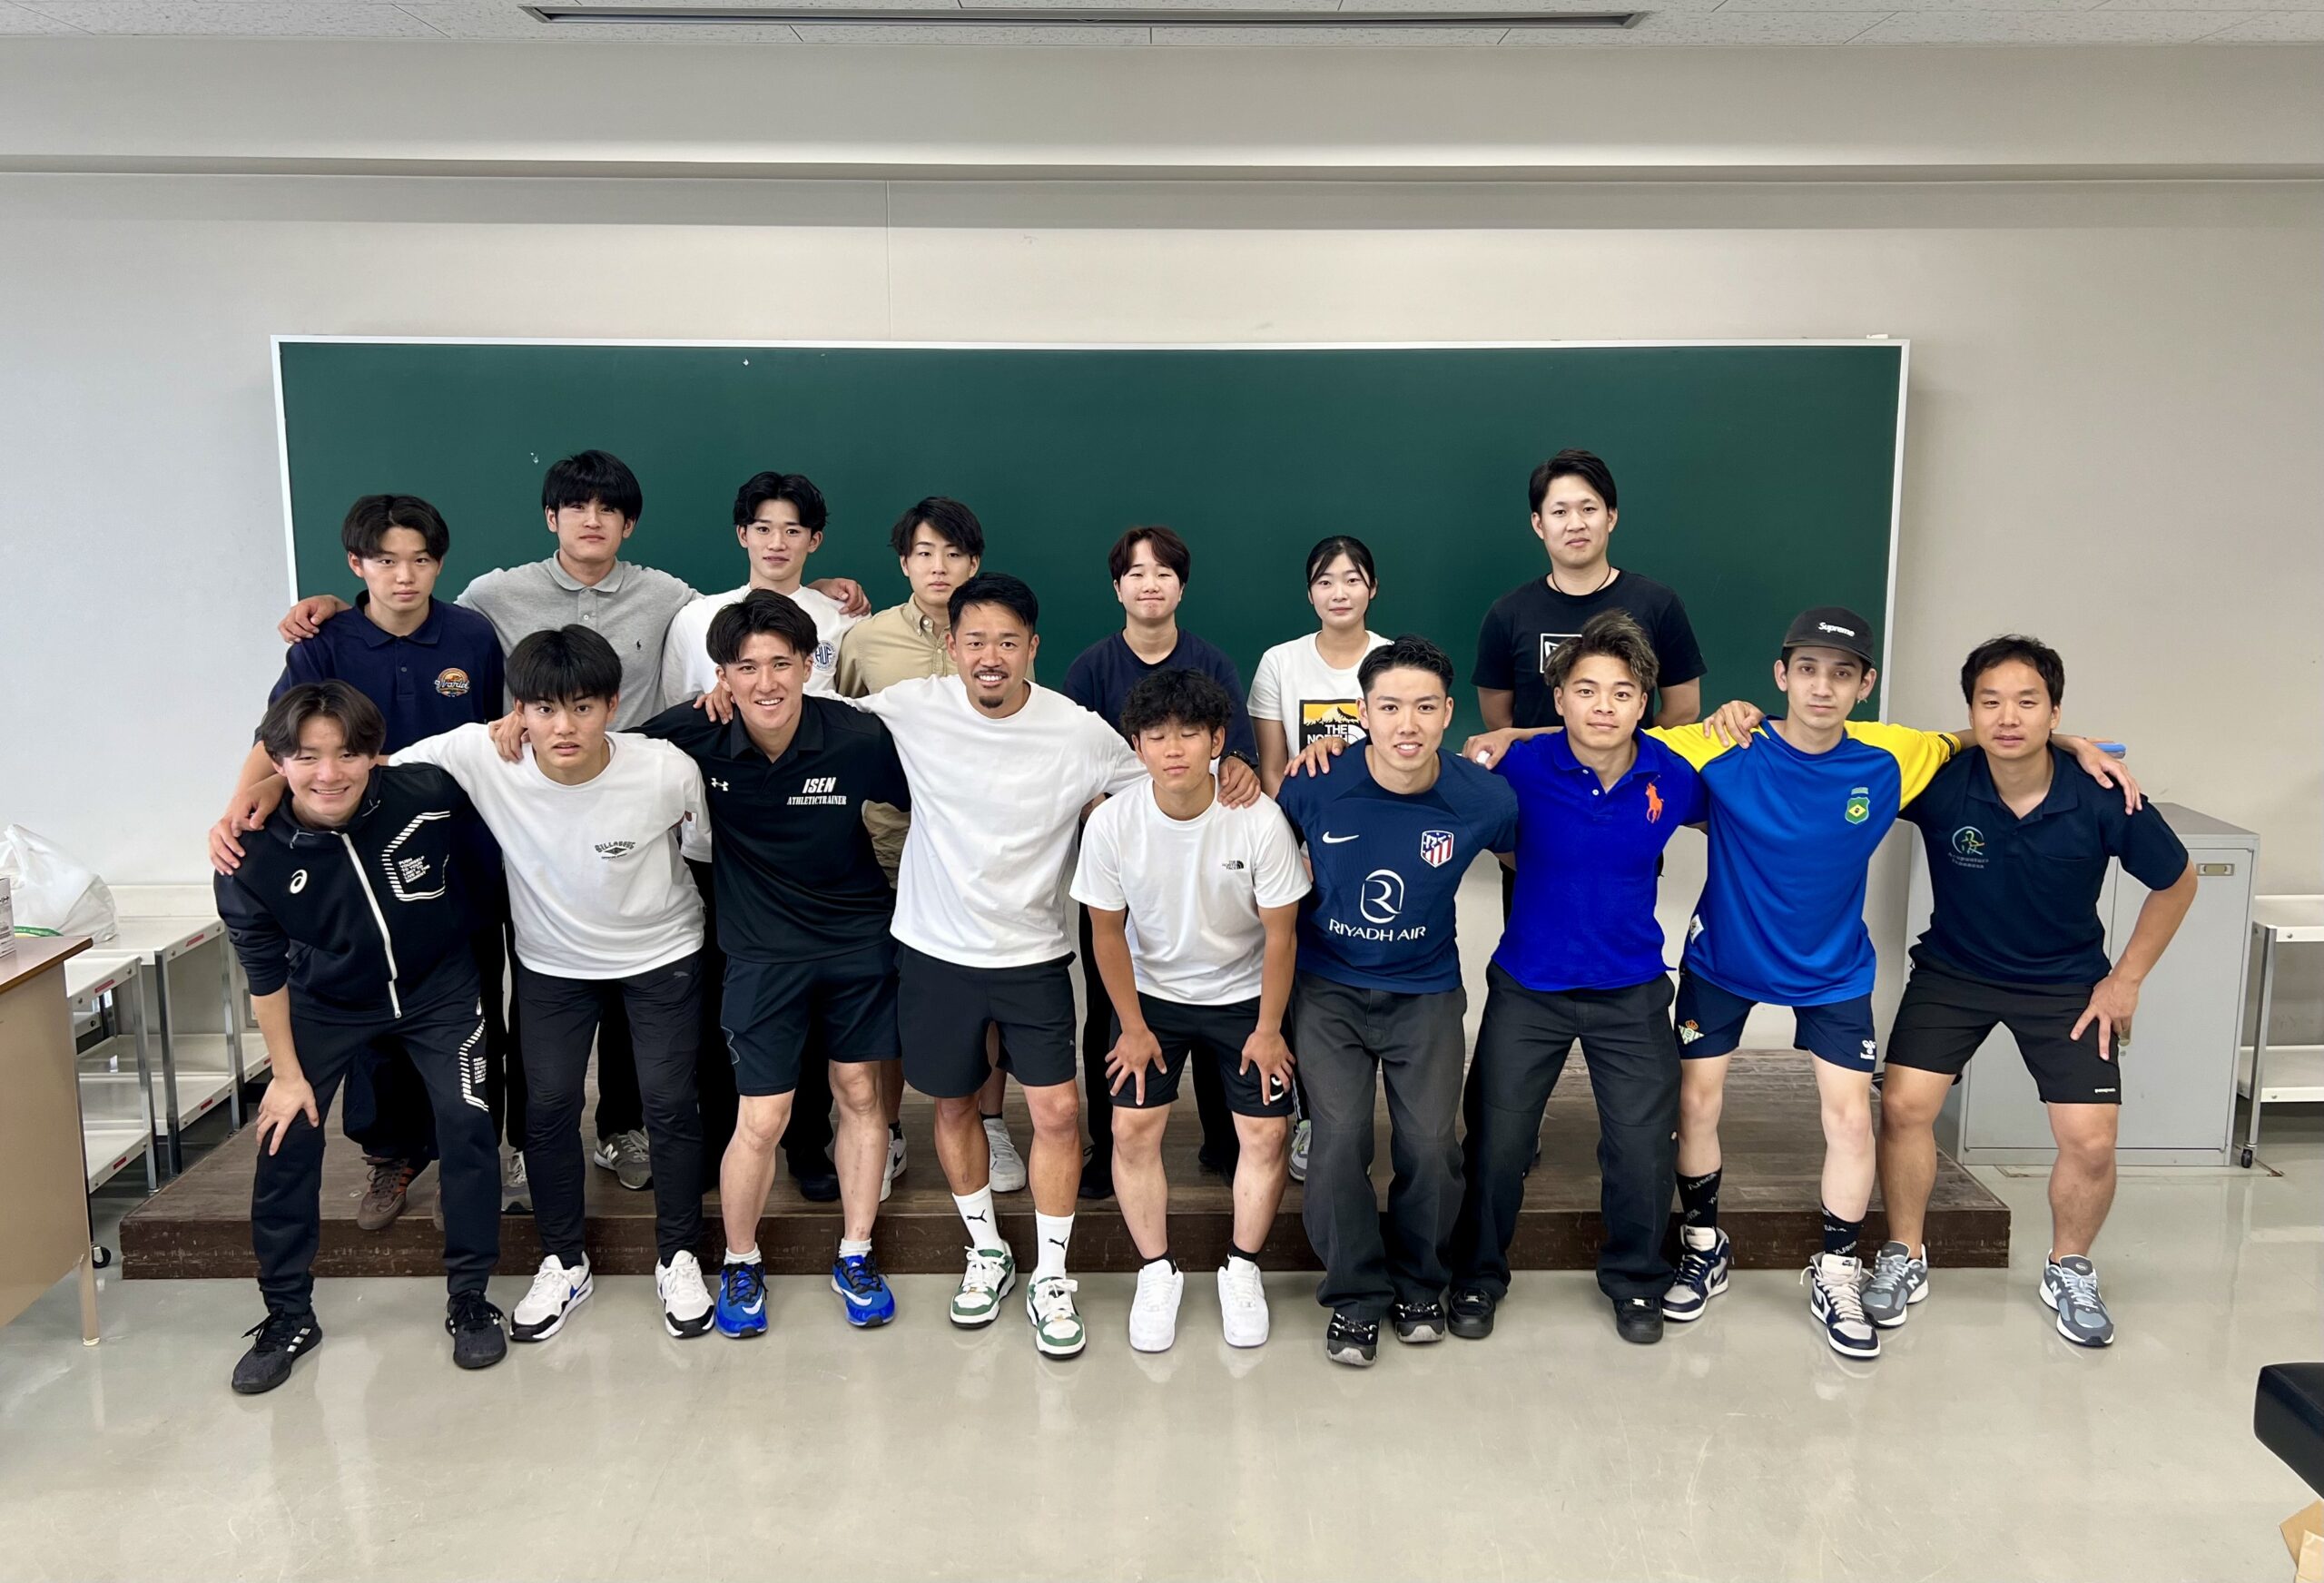 ヨーロッパサッカートレーナー実技講習 in 大阪